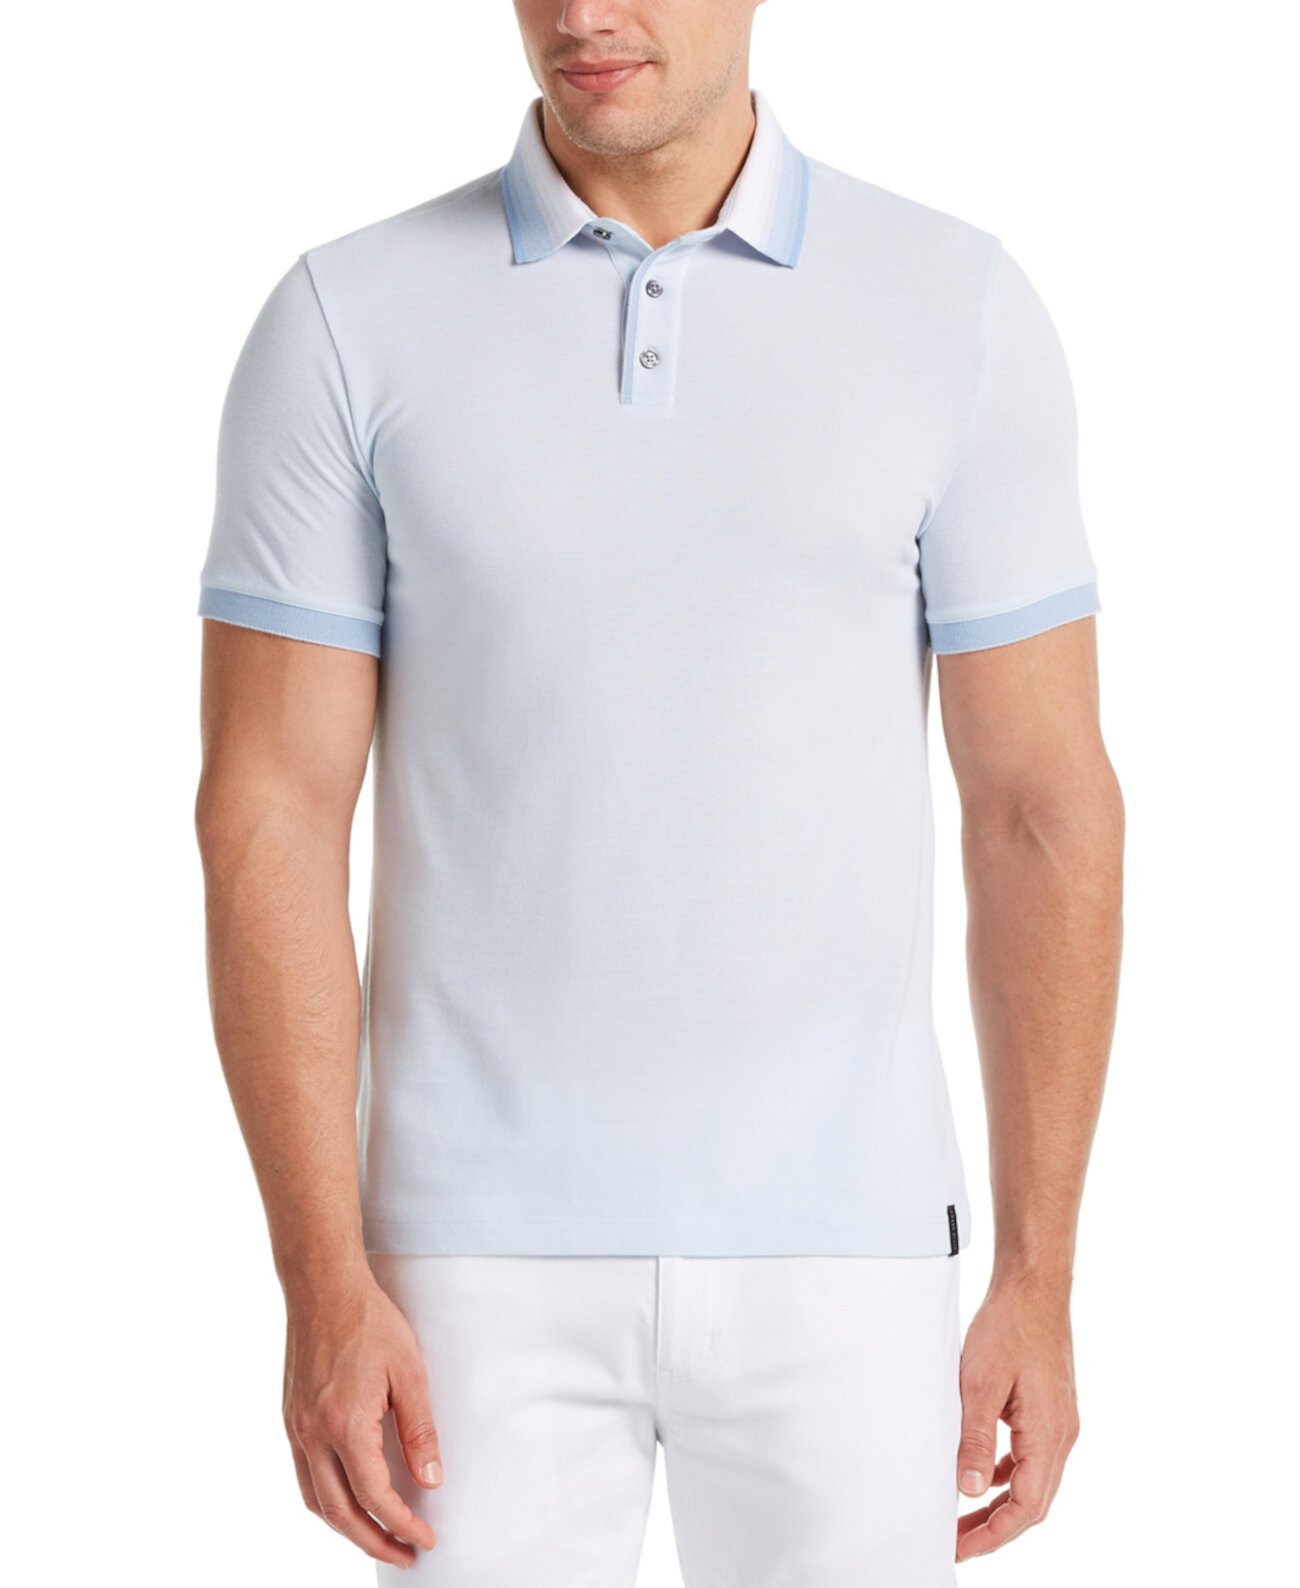 Мужская рубашка-поло с коротким рукавом из пике с большим и высоким воротником с эффектом омбре Perry Ellis